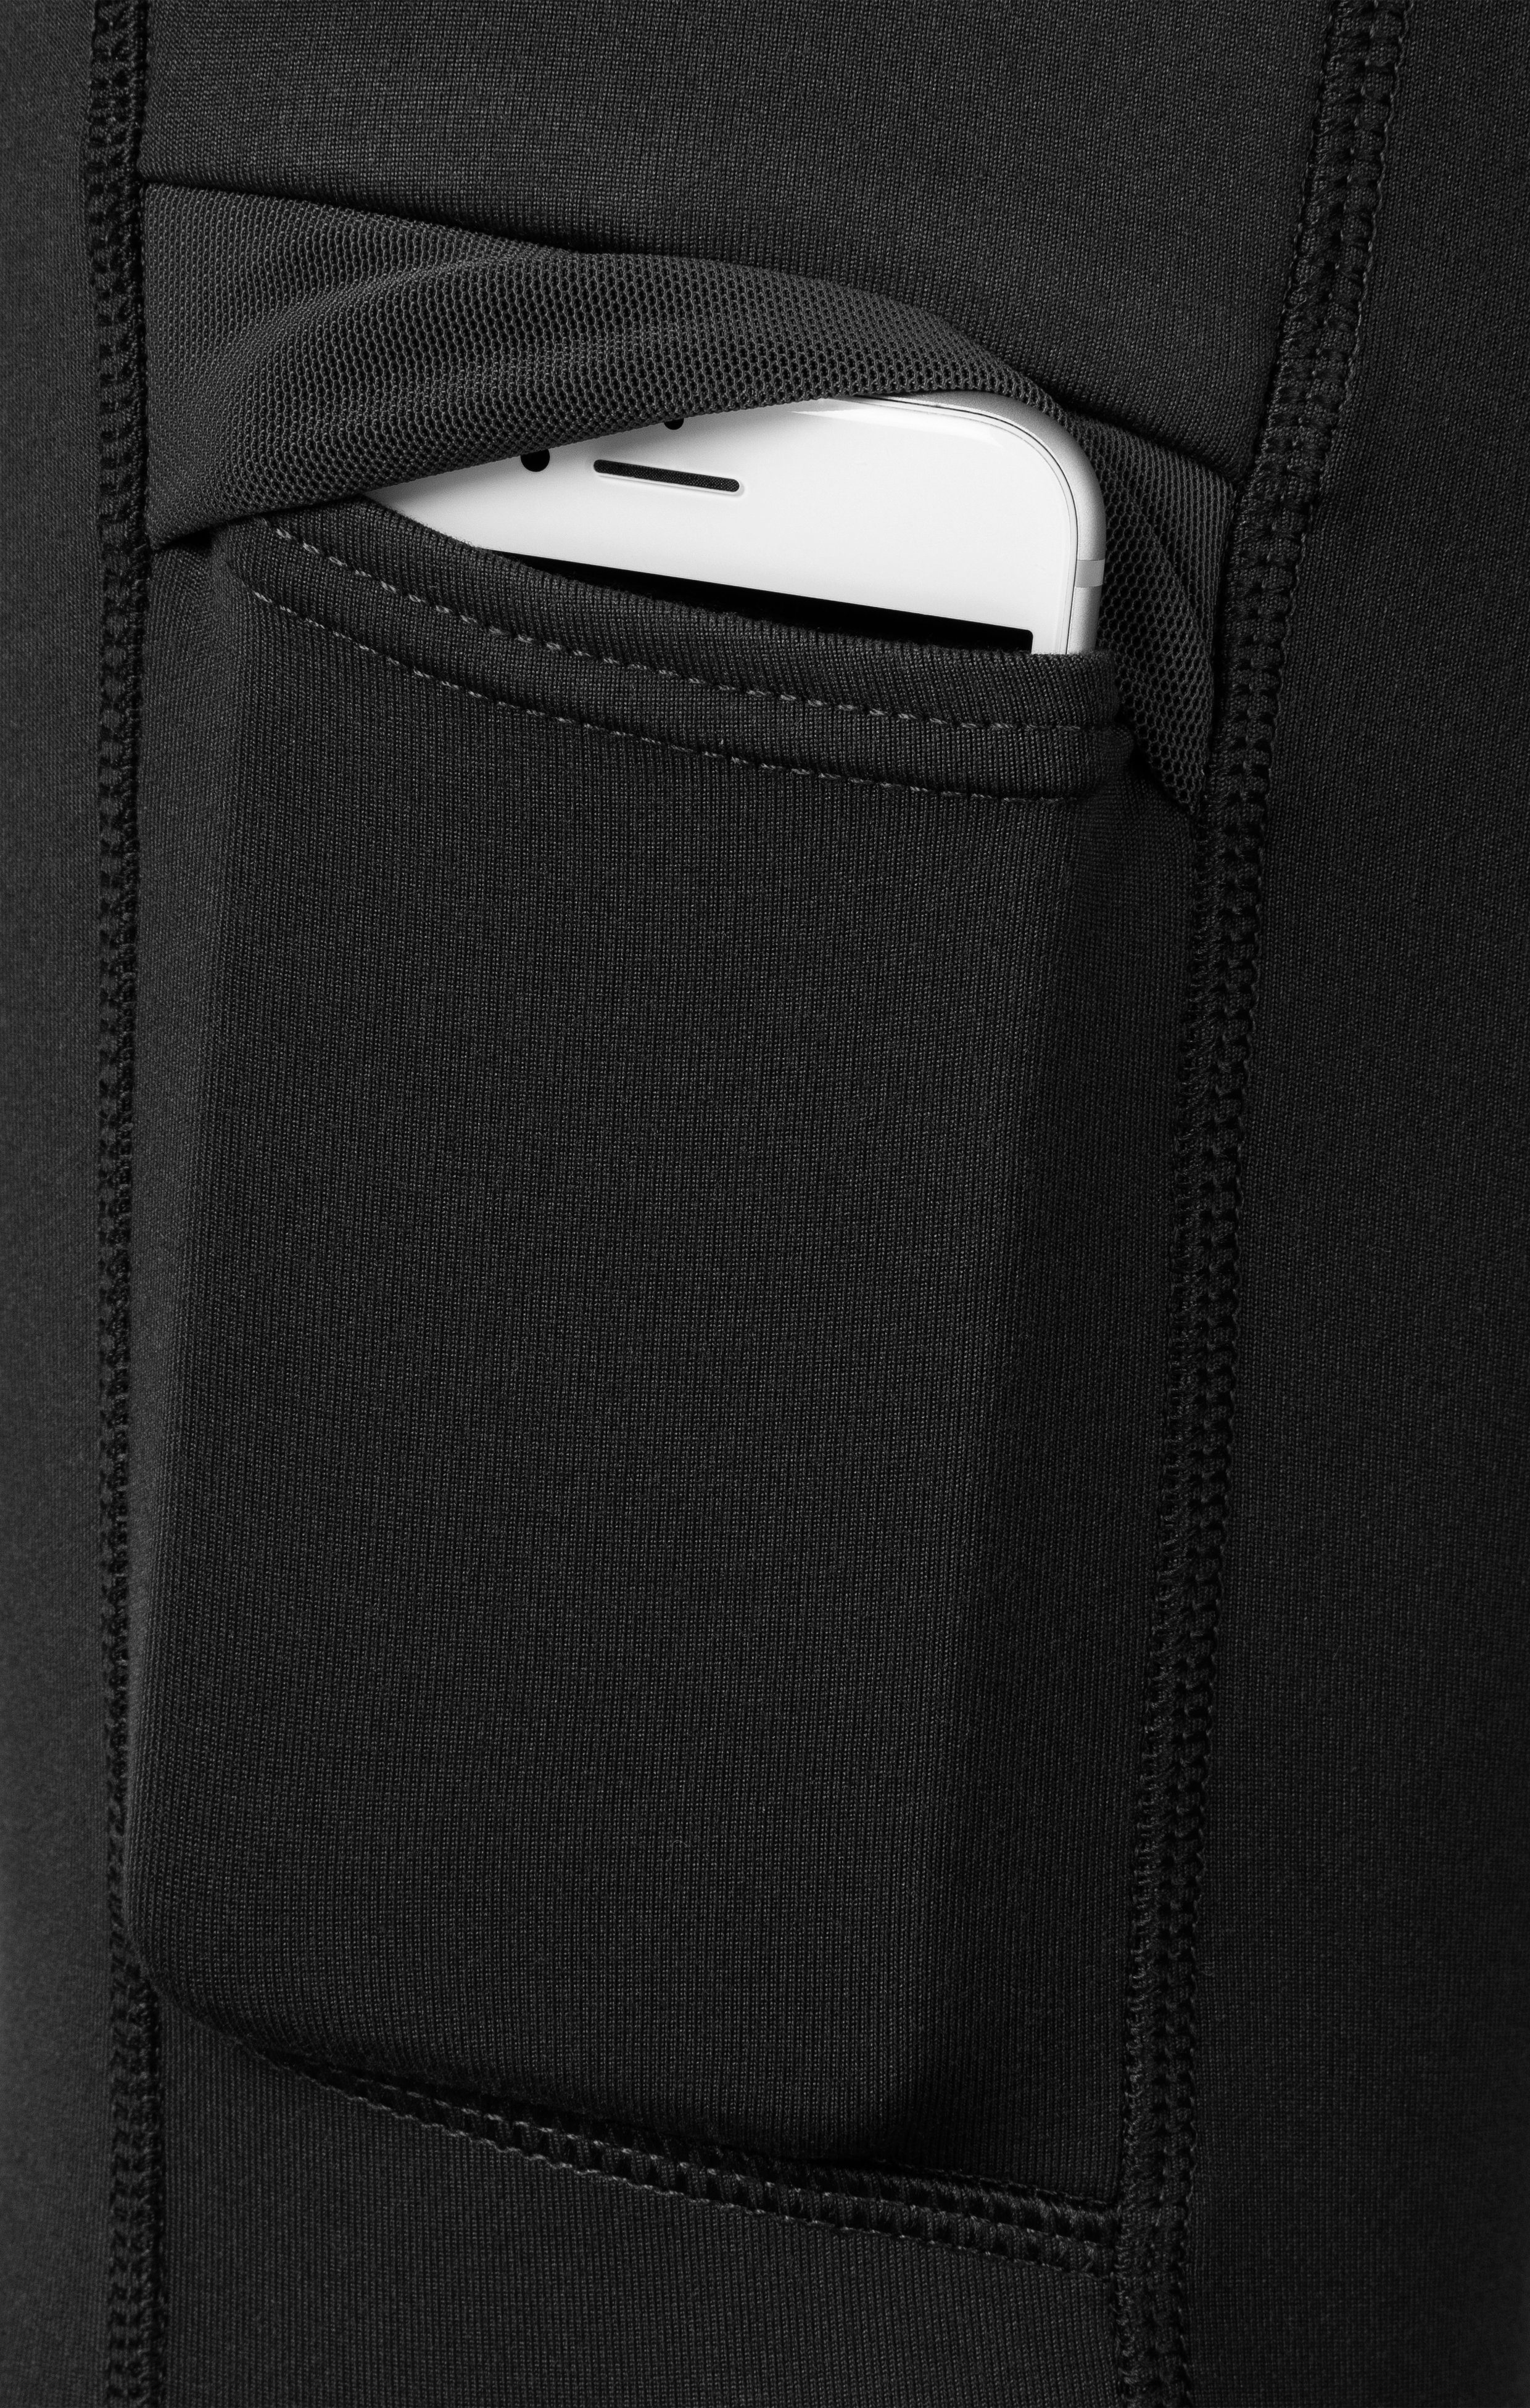 Lauftights LASCANA Thermo-Trekkinghose ACTIVE mit schwarz Leggings Taschen praktischen ; Hybrid